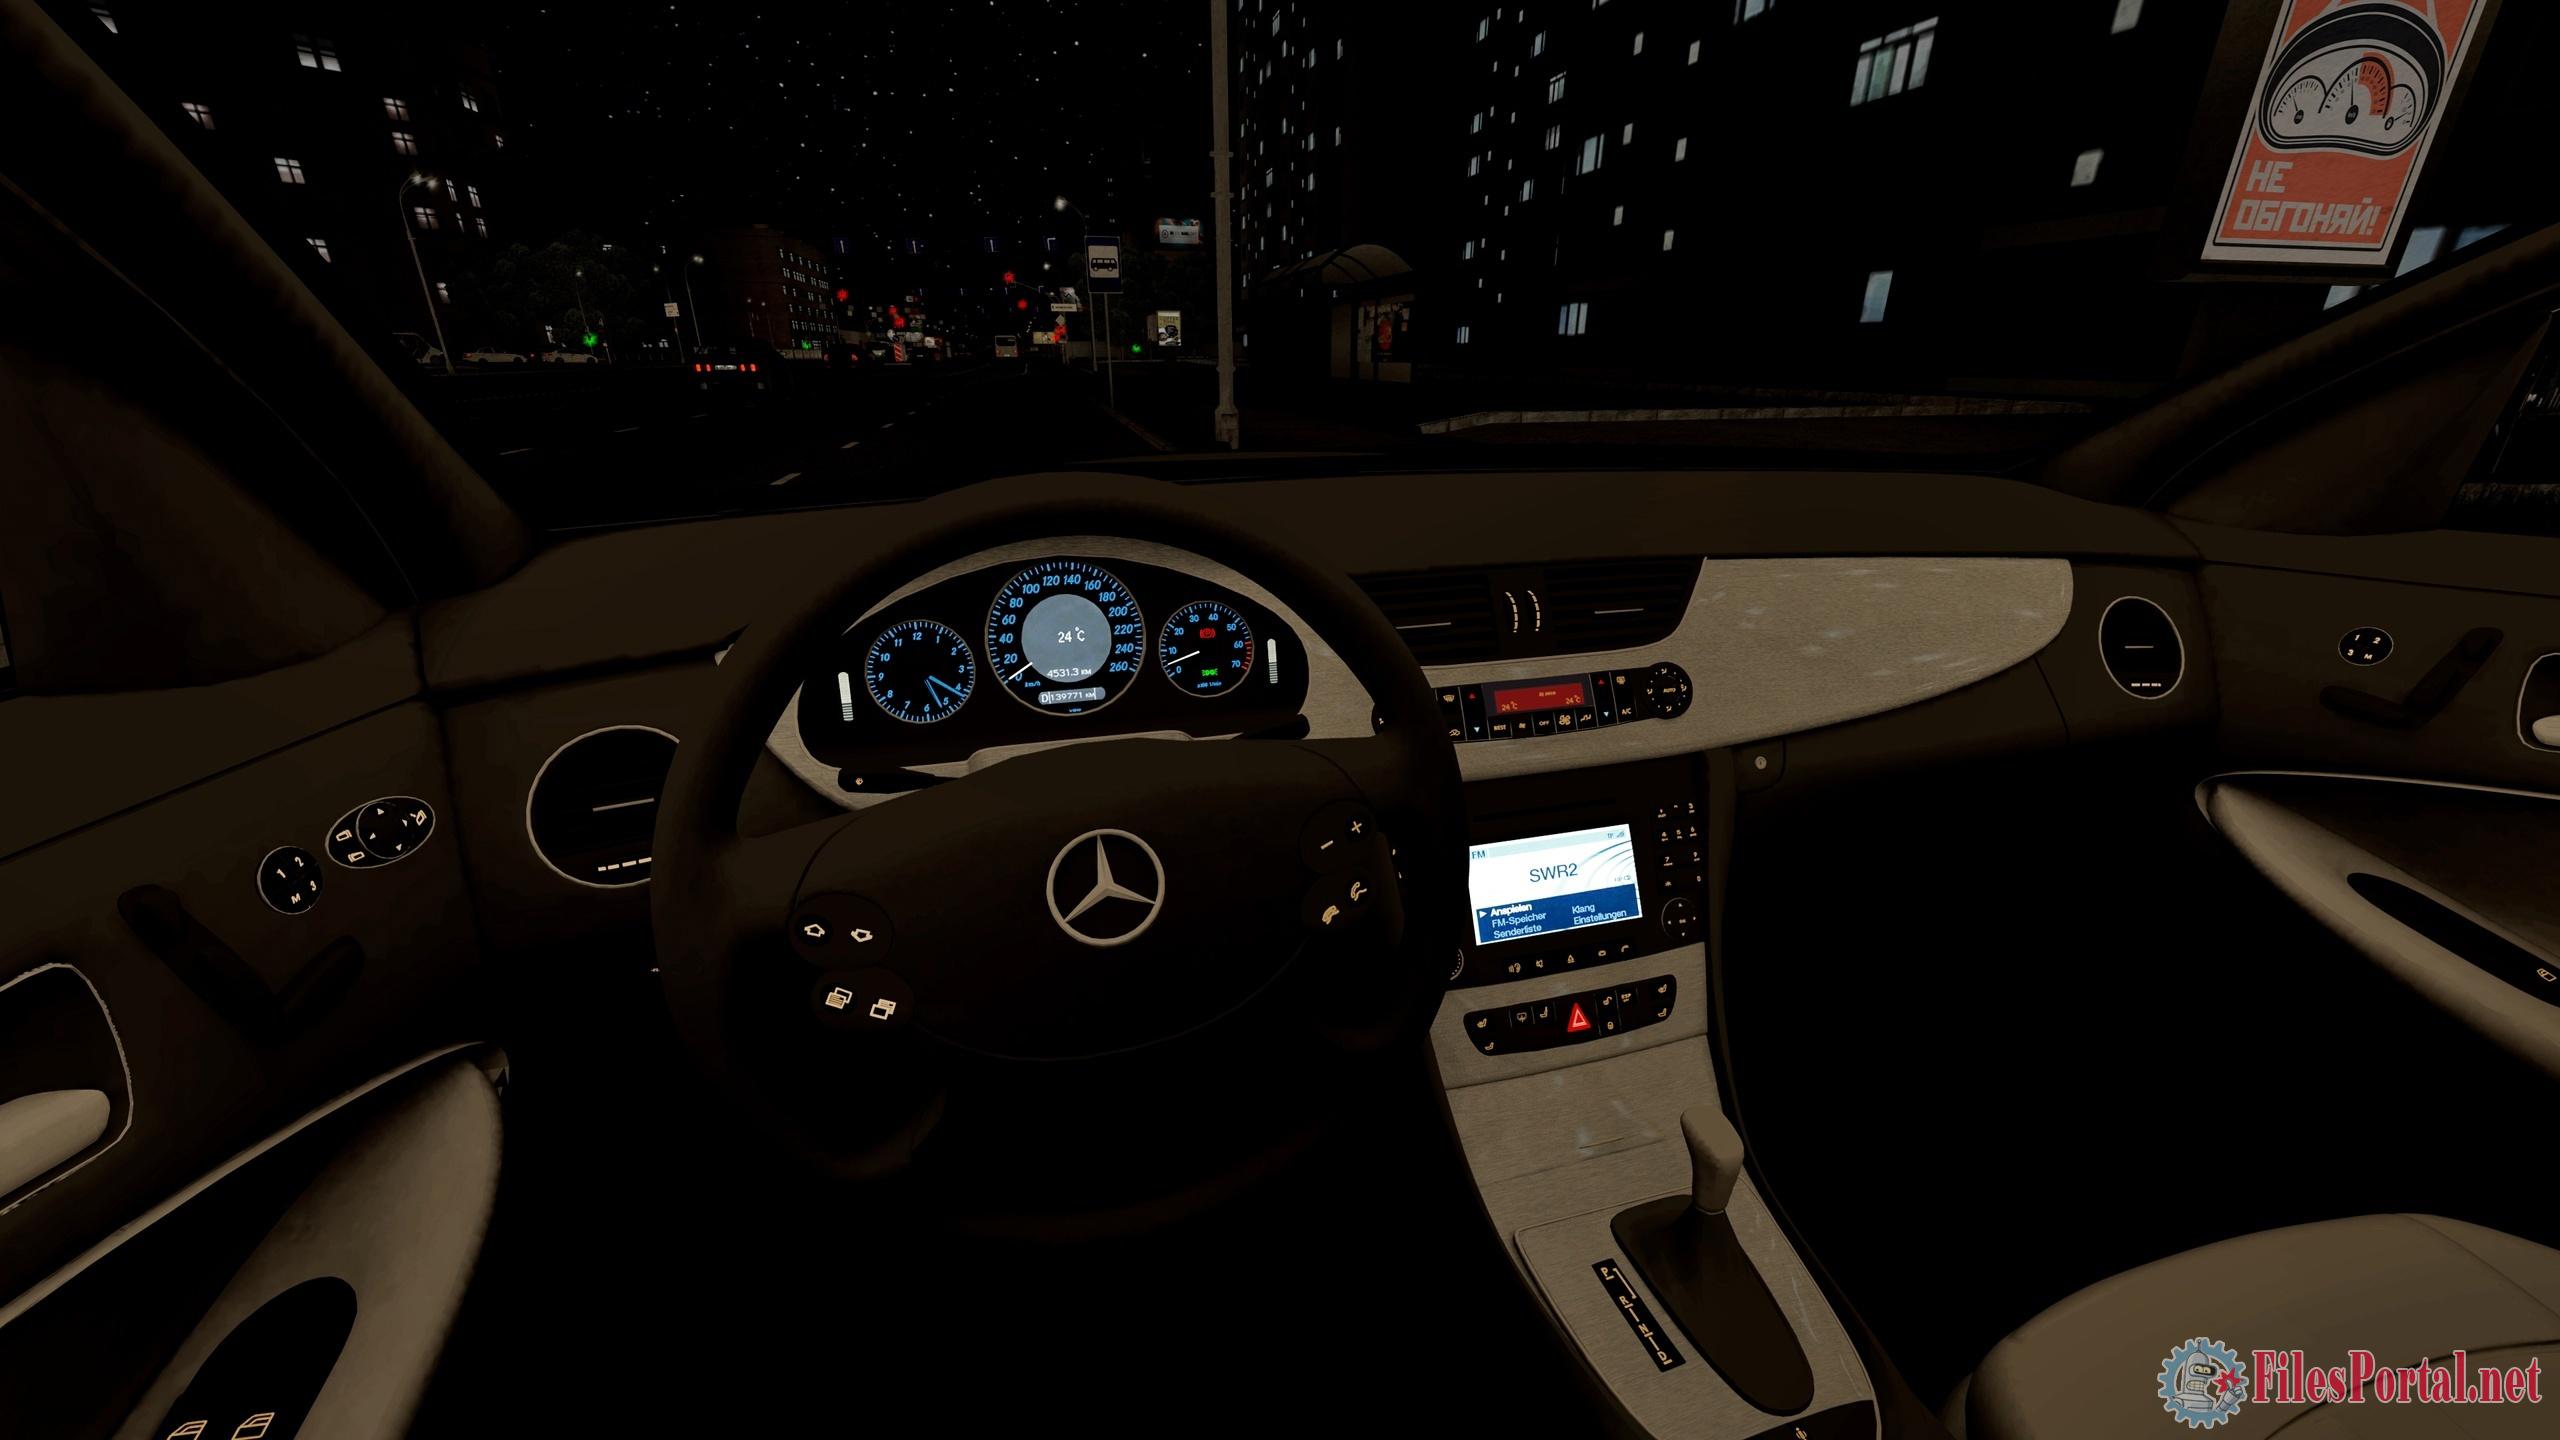 Mercedes Benz CLS w219 City car Driving. CLS 219 City car Driving. Mercedes Benz CLS City car Driving 1.5.1. CLS 2015 City car Driving.